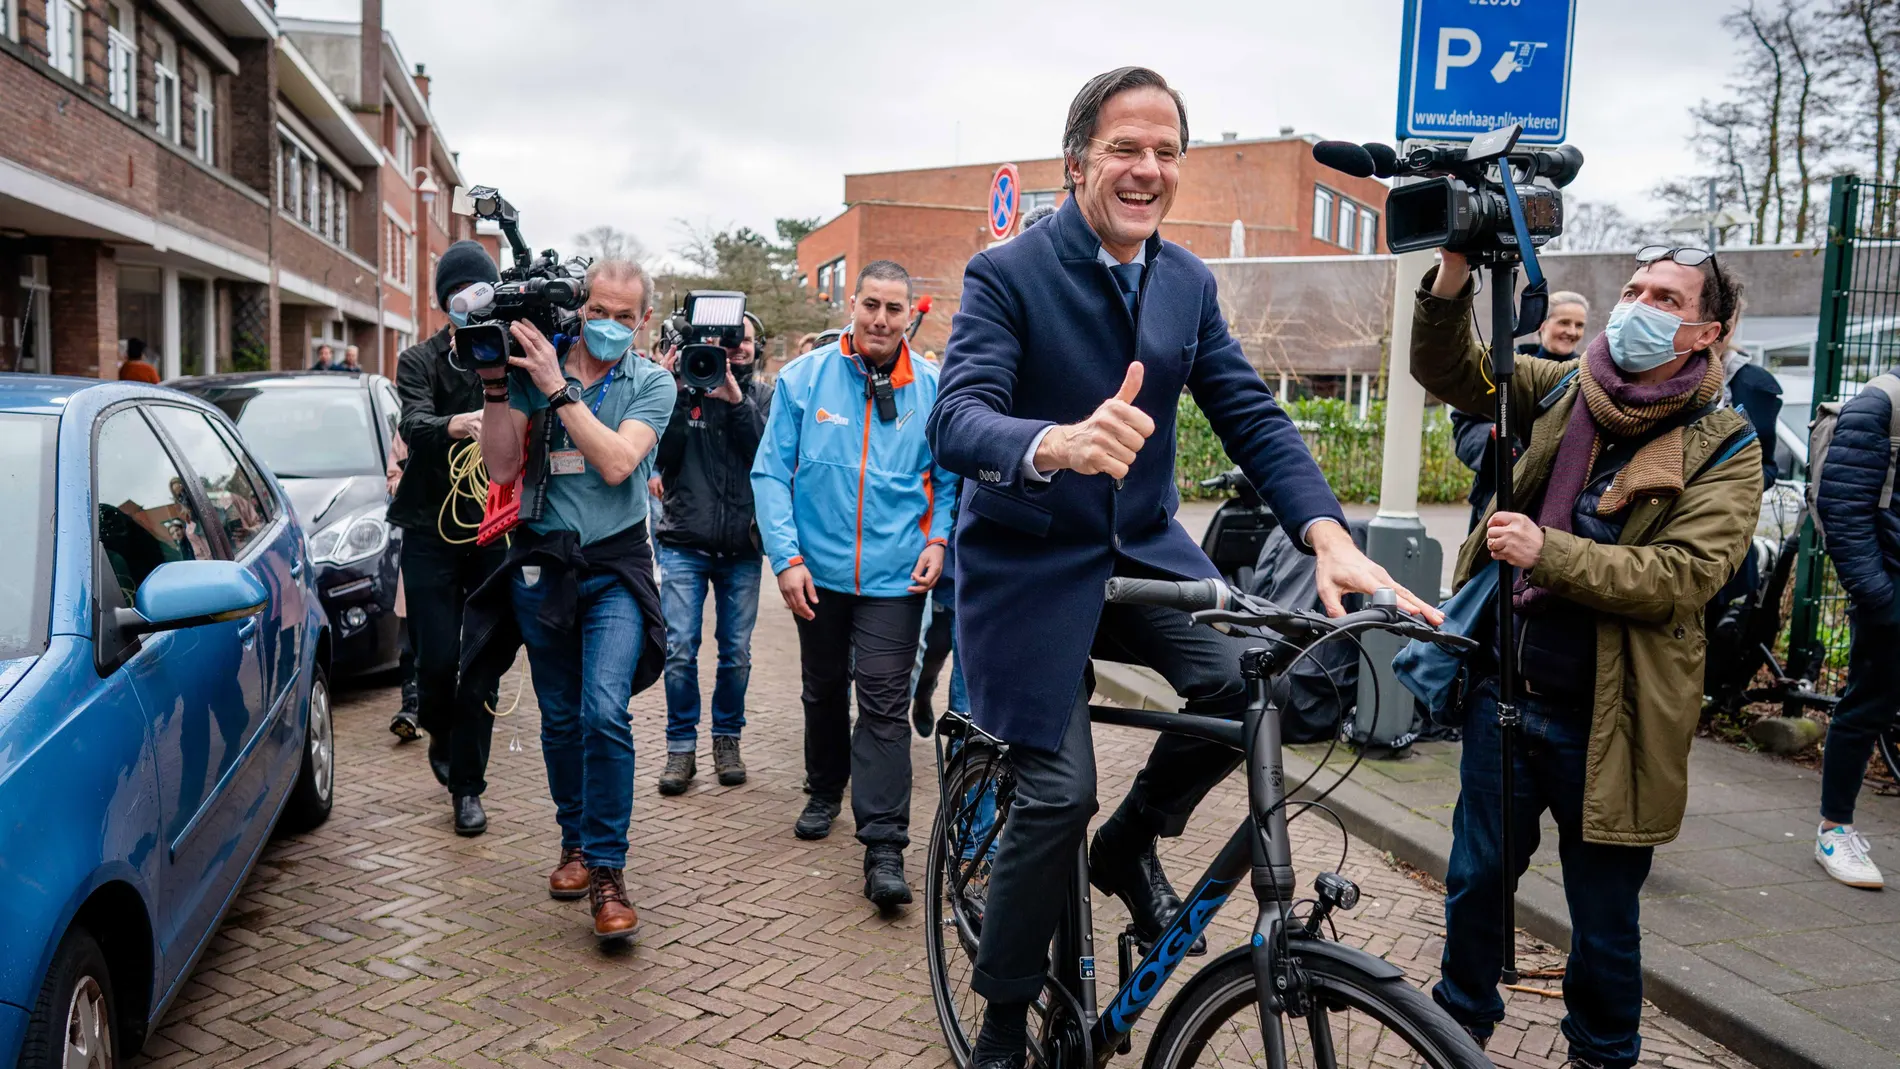 El liberal Rutte gana un cuarto mandato en Países Bajos